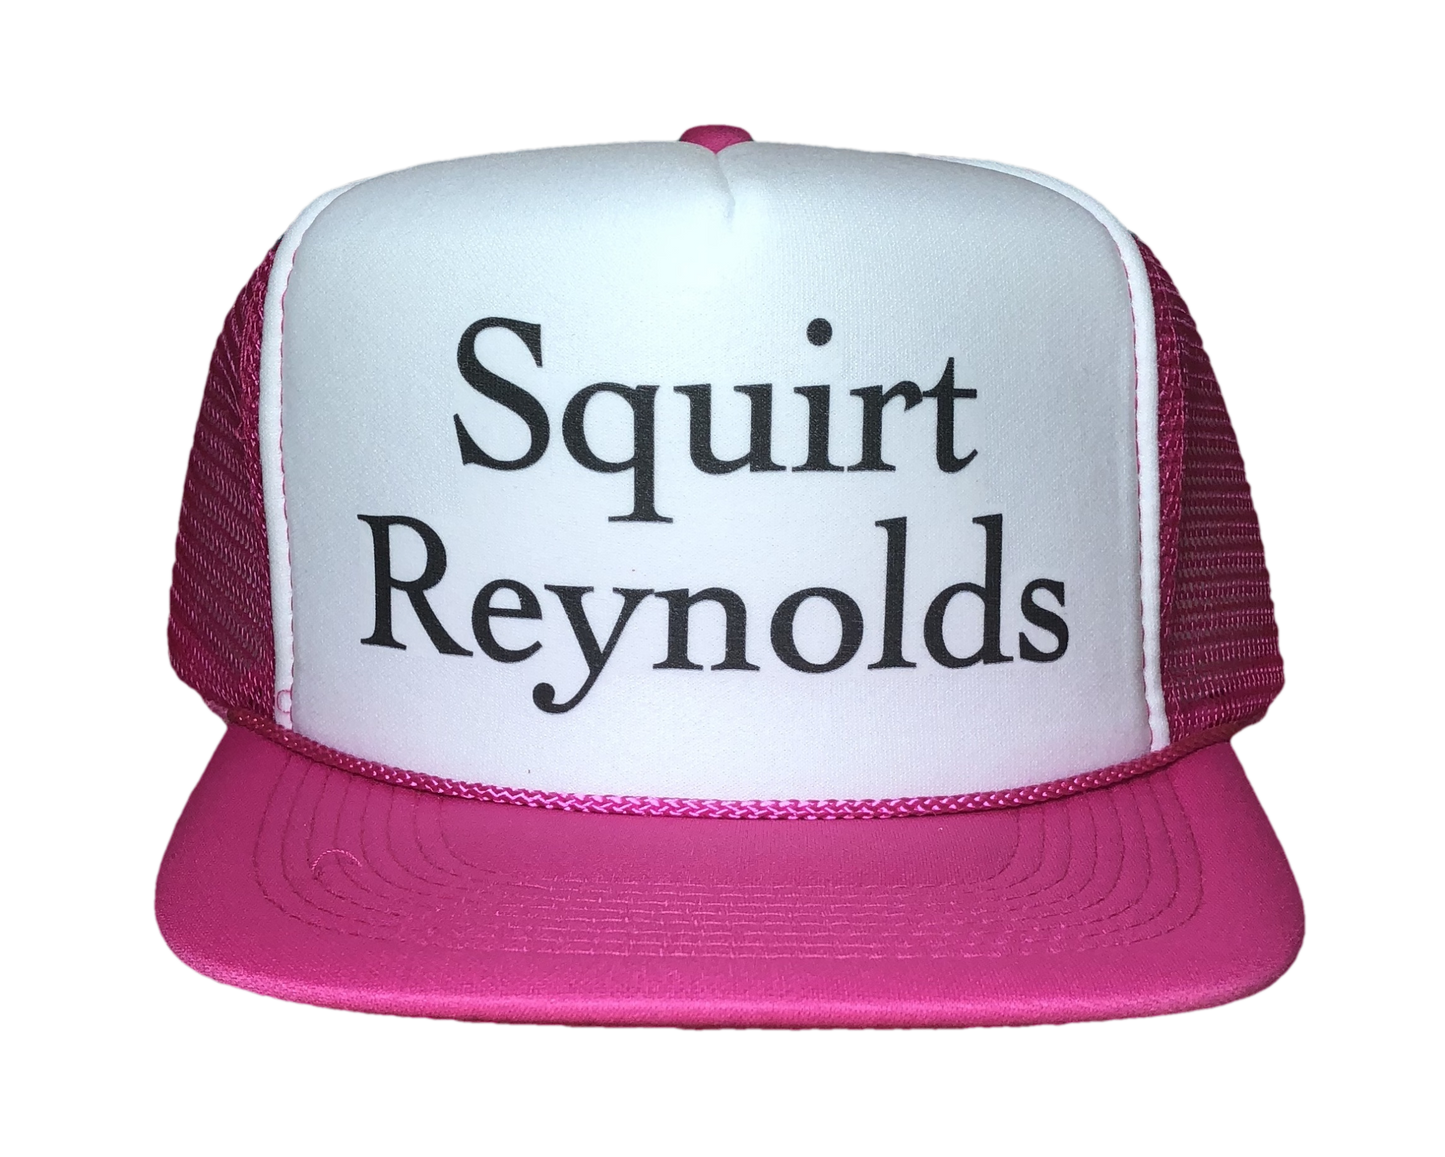 Squirt Reynolds Trucker Hat